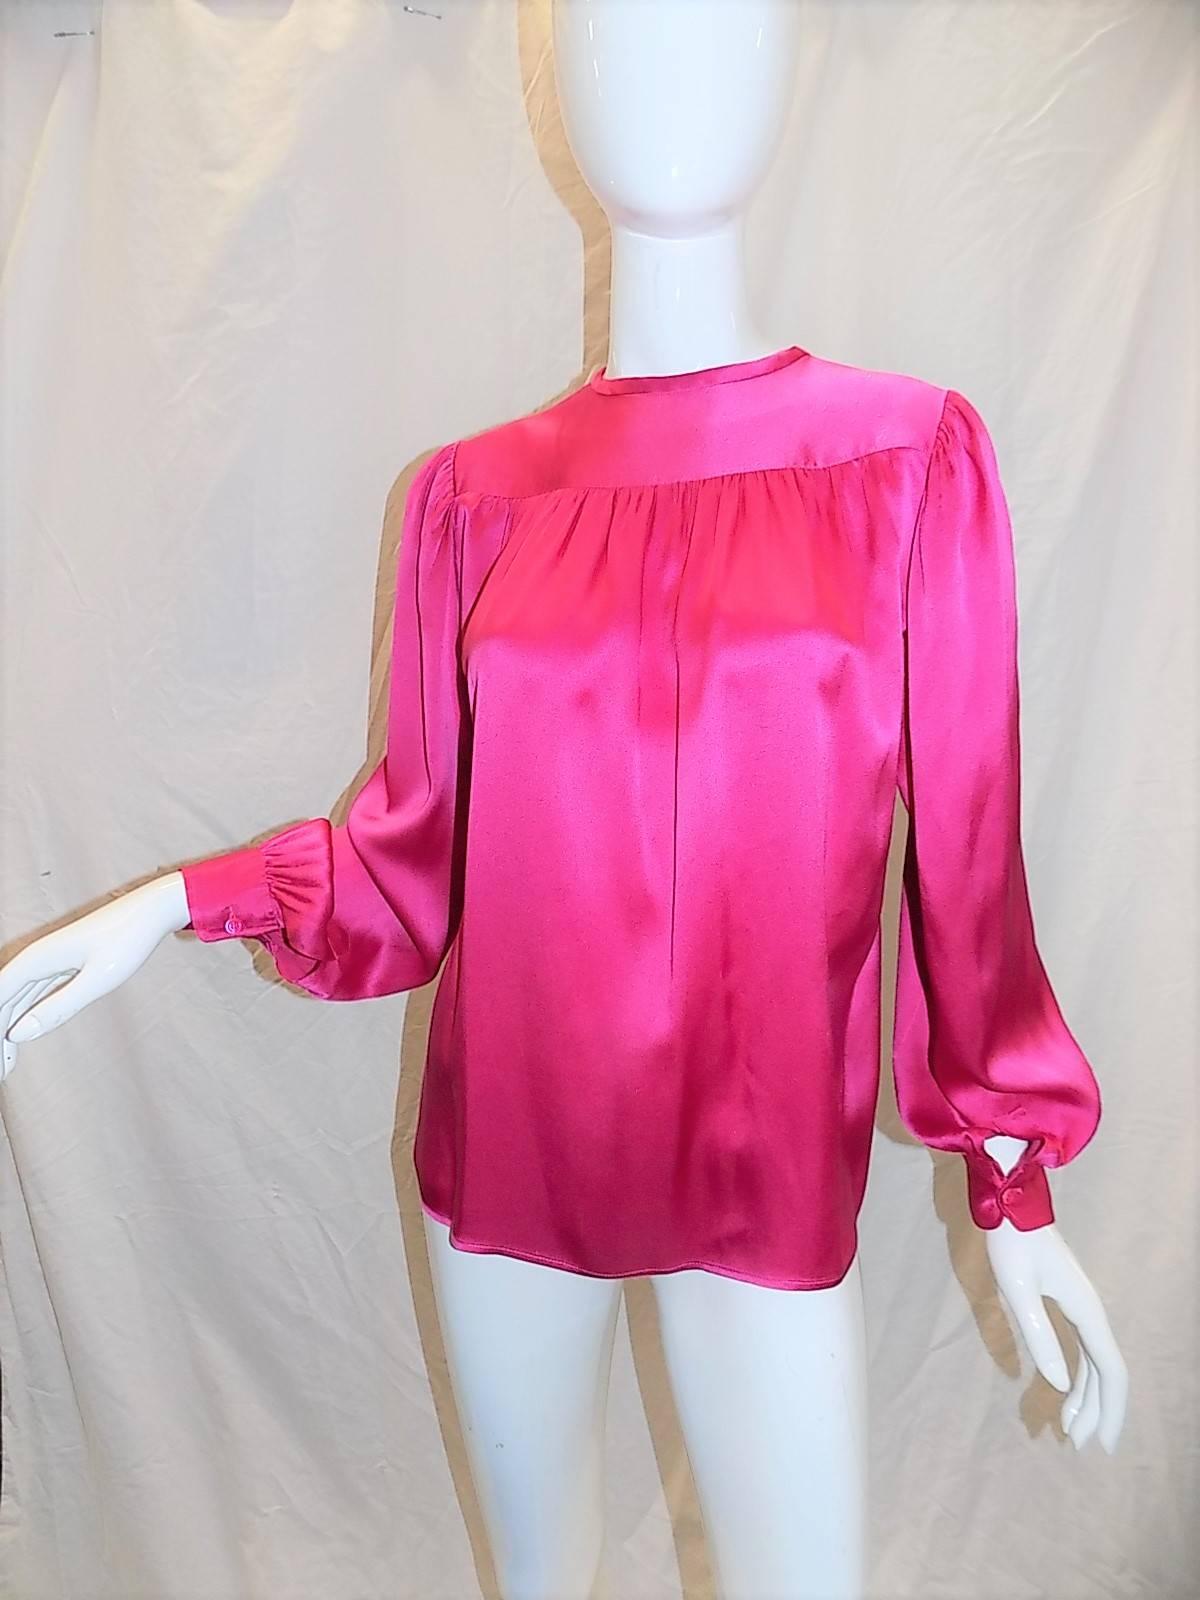 Signature pink color Yves Saint Laurent silk blouse. Mint condition. Size 36.
Bust 42